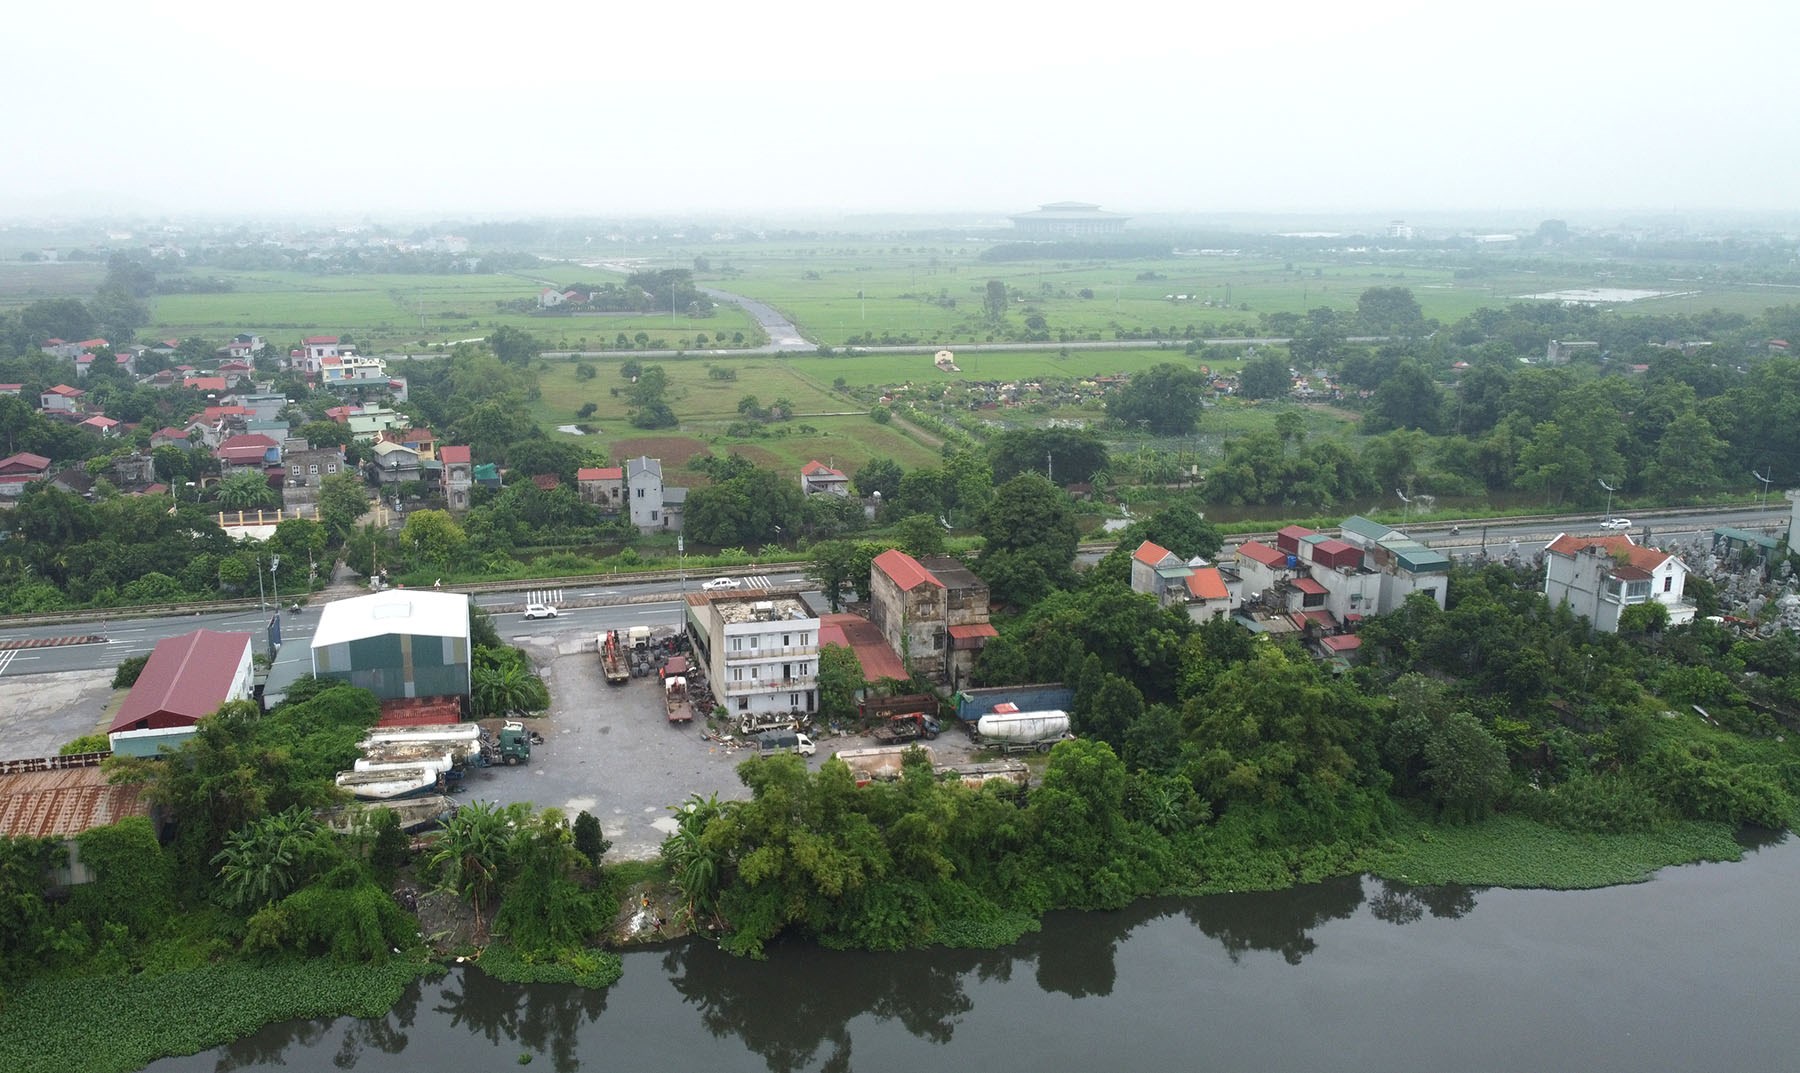 Hình ảnh vành đai 5 vùng Hà Nội đang xây dựng đoạn chợ Dầu - Ba Đa, Hà Nam